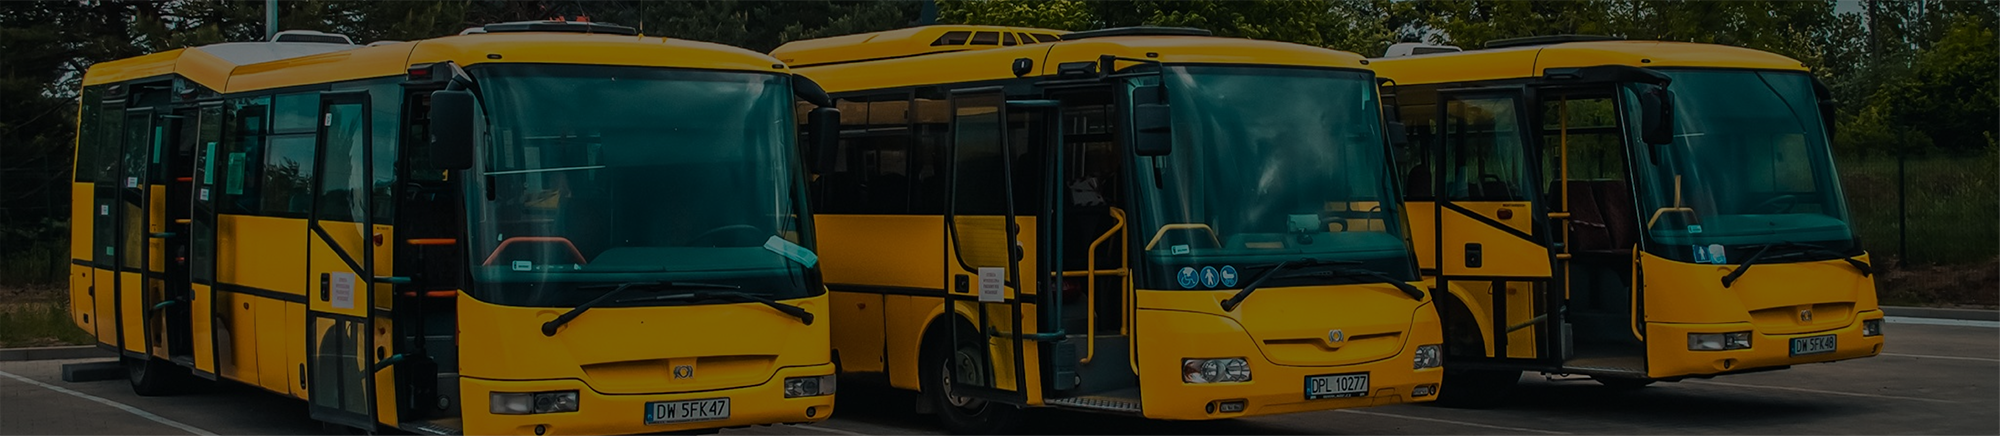 Trzy żółte autobusy